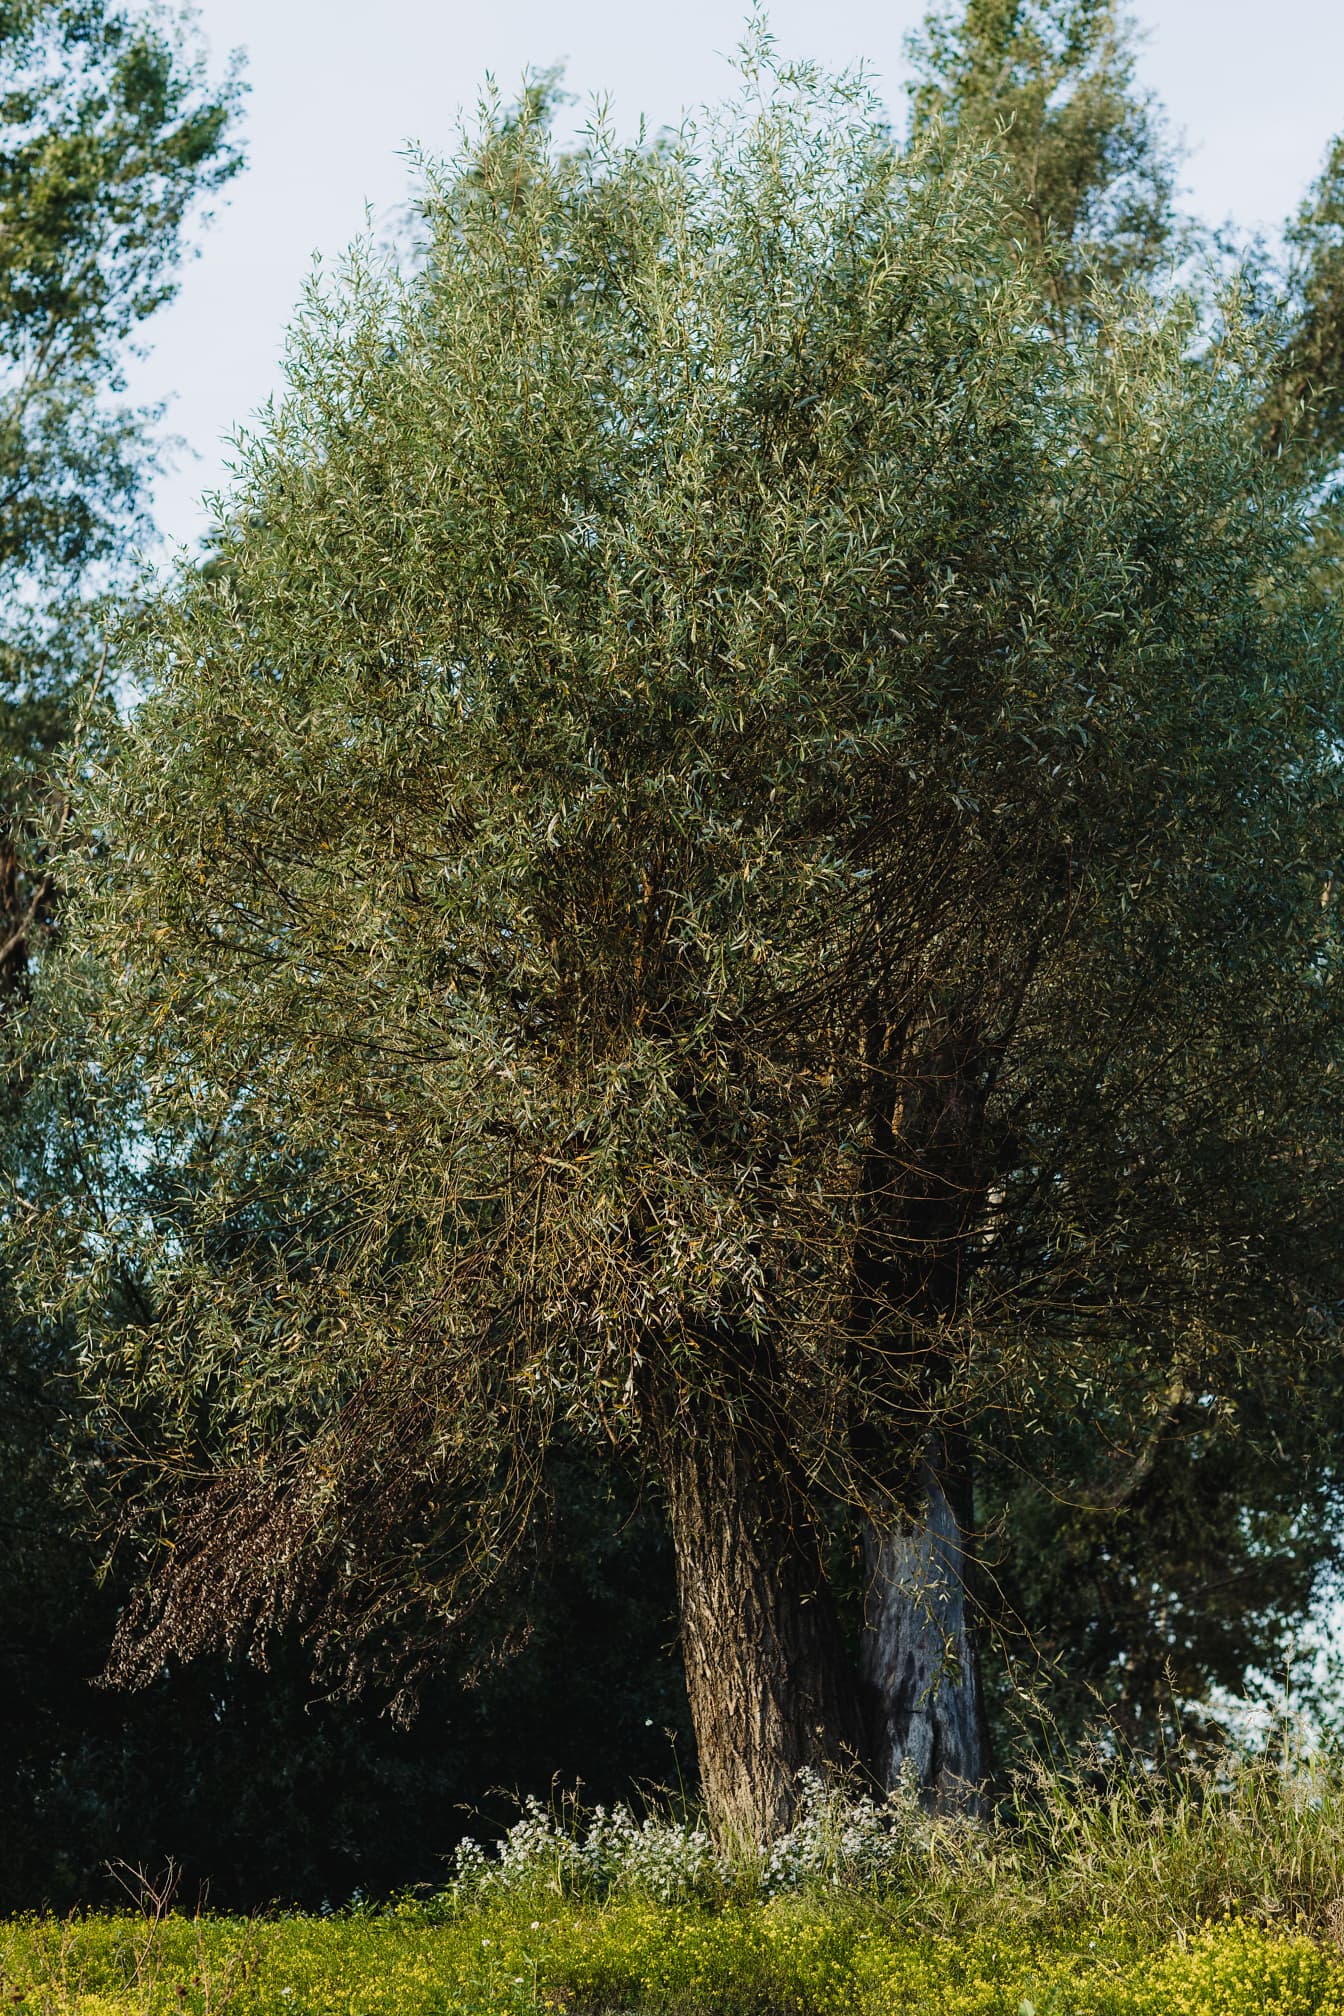 De oude boomstam (Salix) van de wilg in de lentetijd